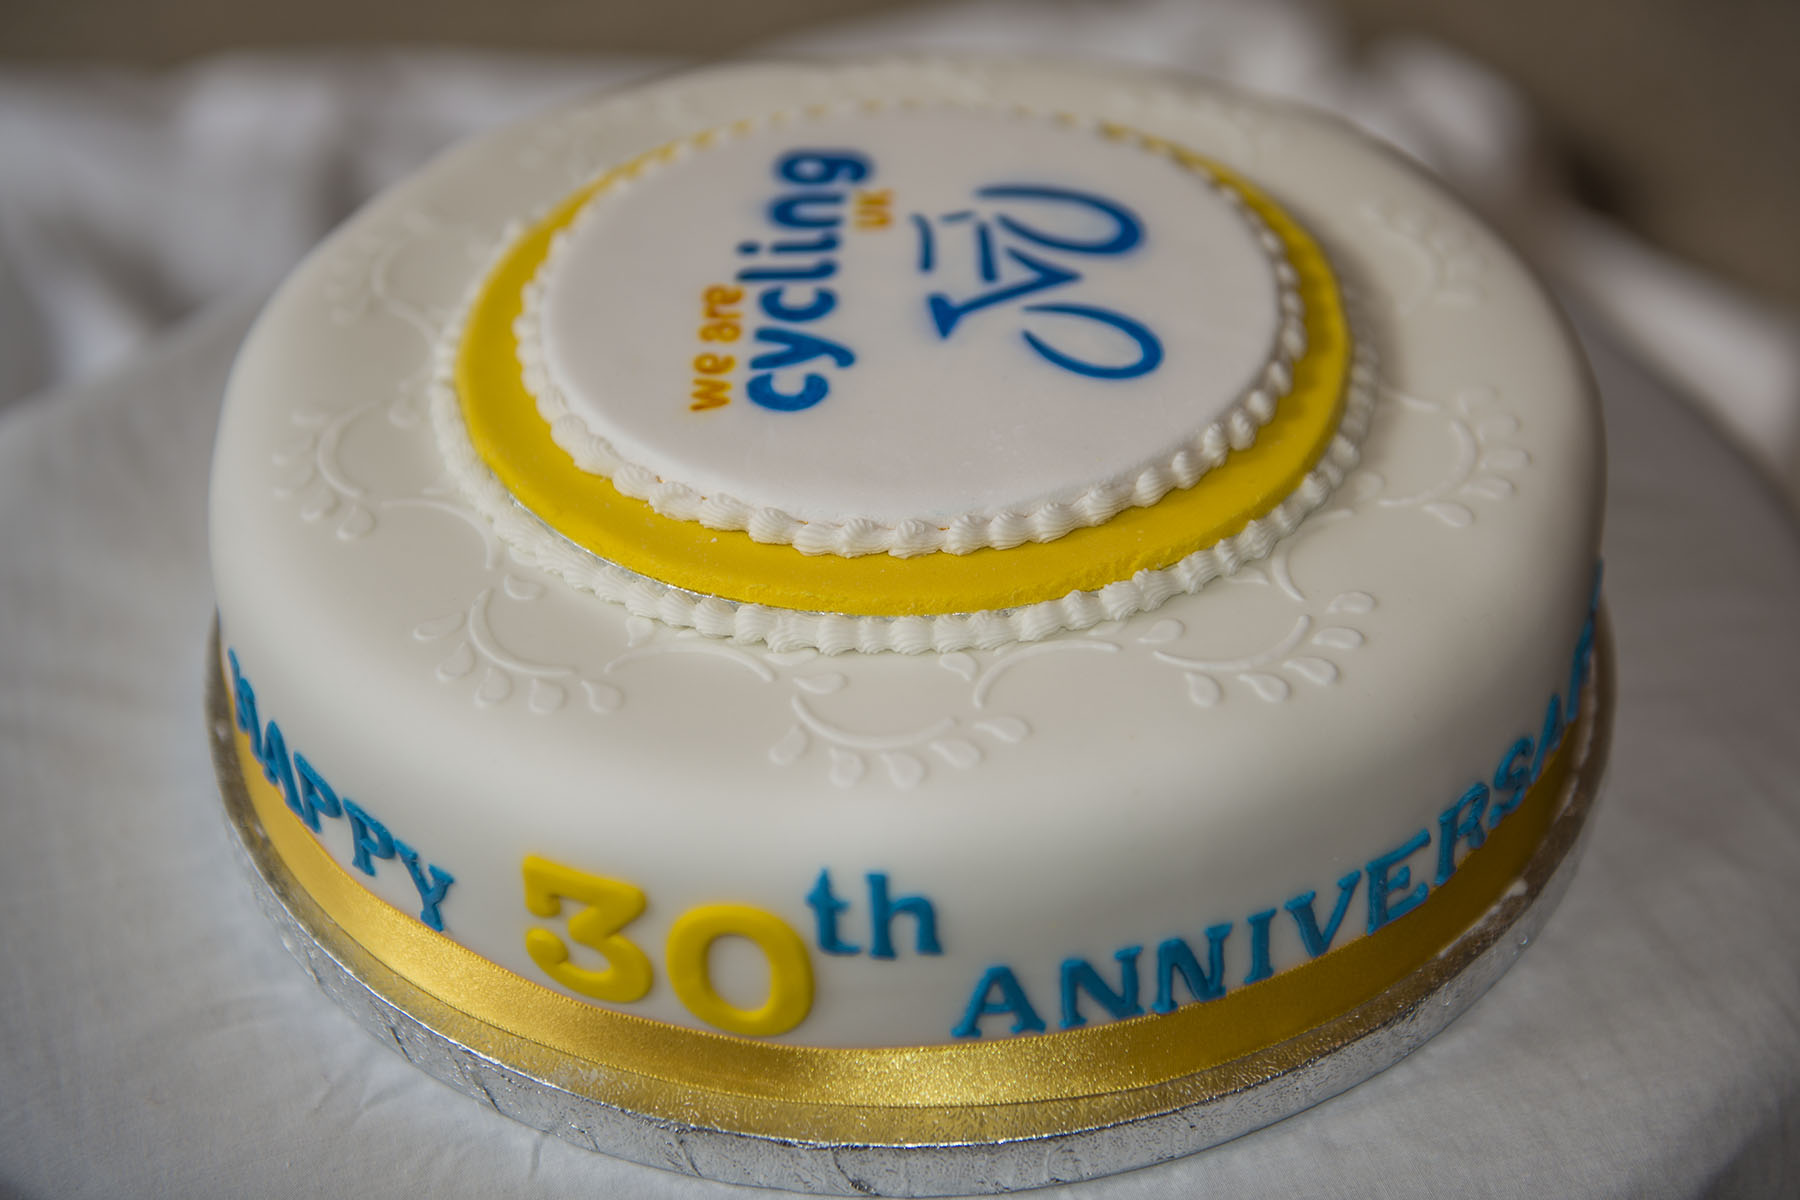 CTC Grampian 30th anniversary Cake